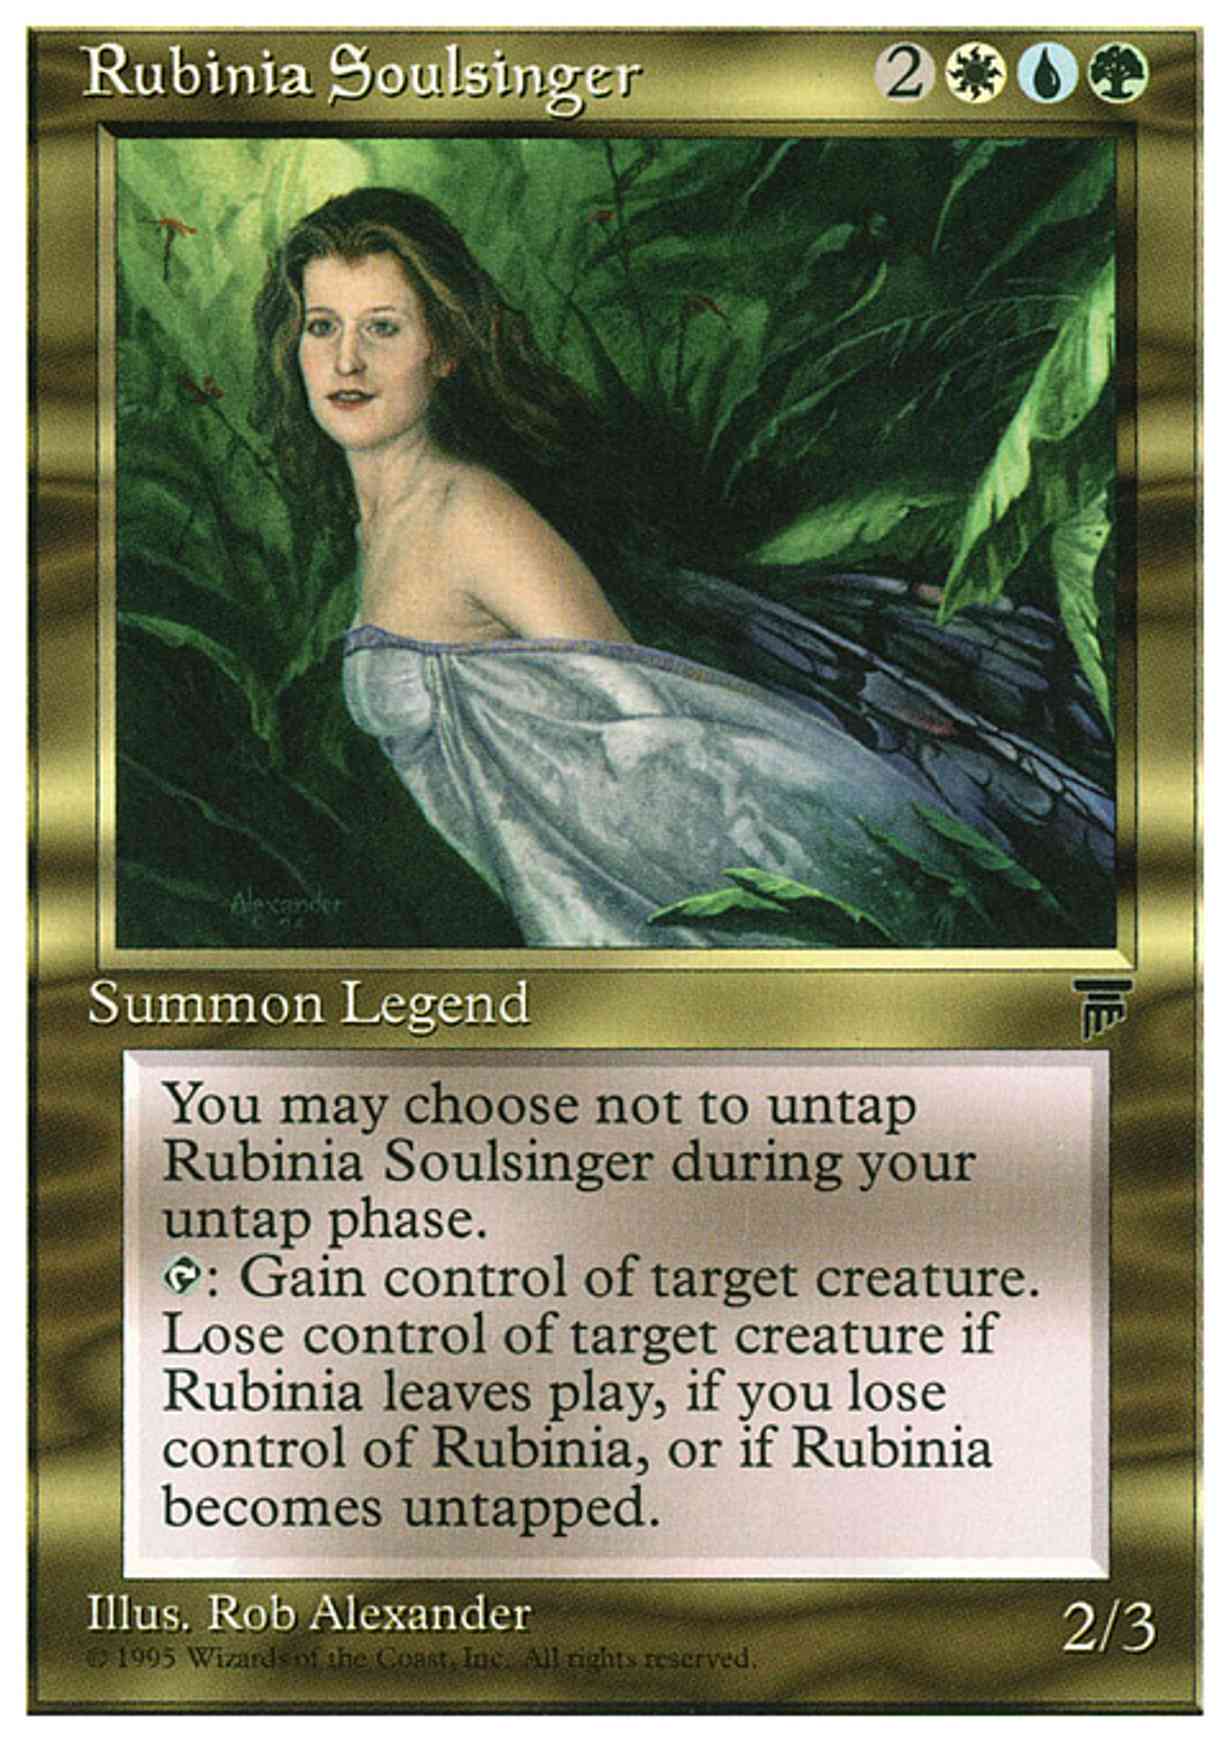 Rubinia Soulsinger magic card front